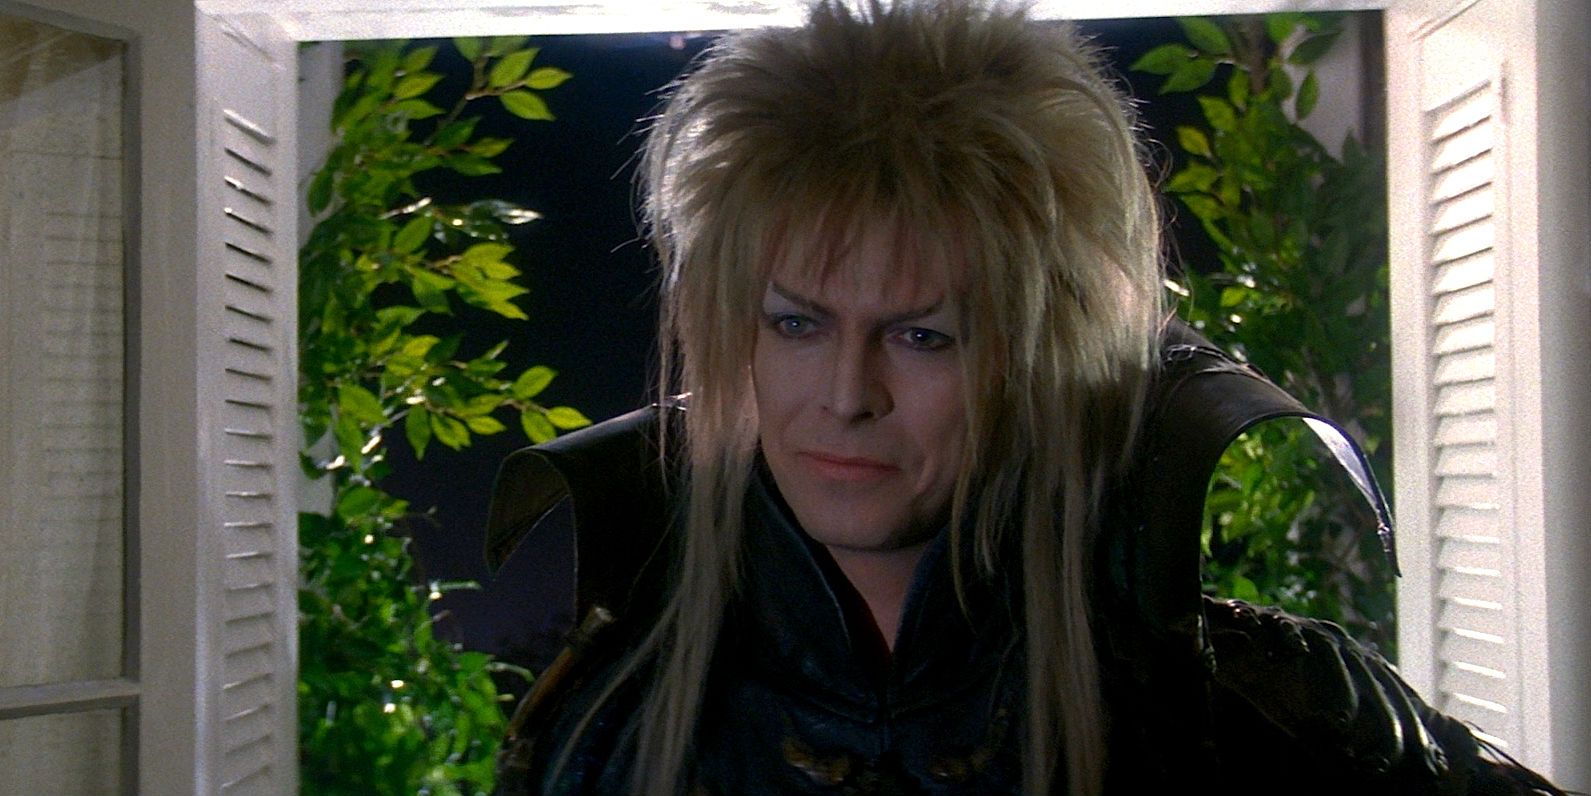 Labyrinth - David Bowie as Jareth